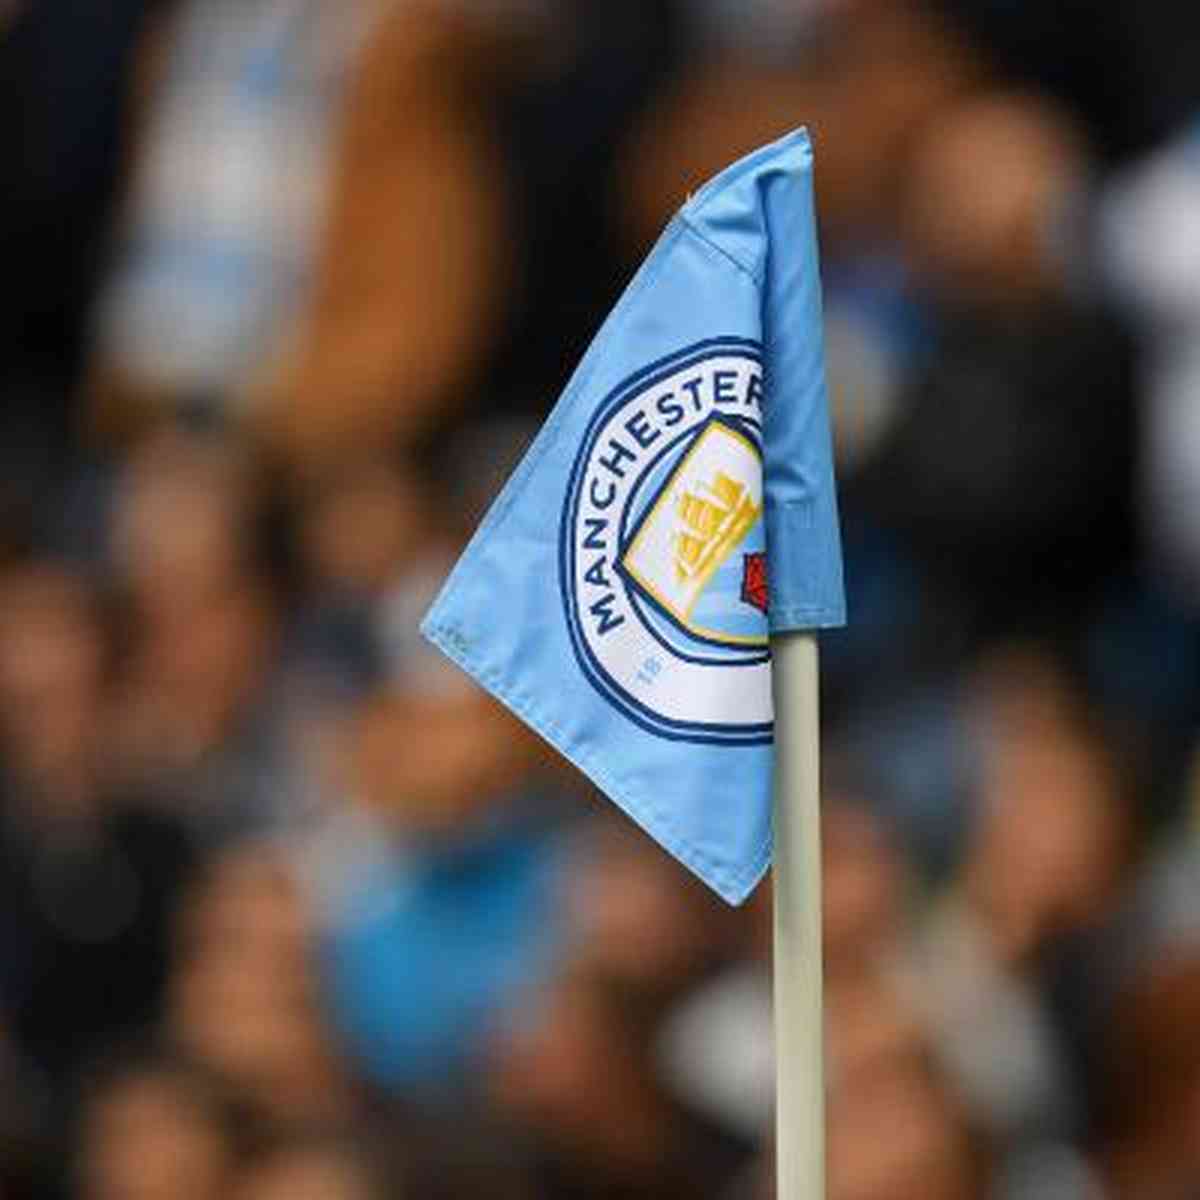 Investigação contra o Manchester City pode durar até 4 anos, diz jornal